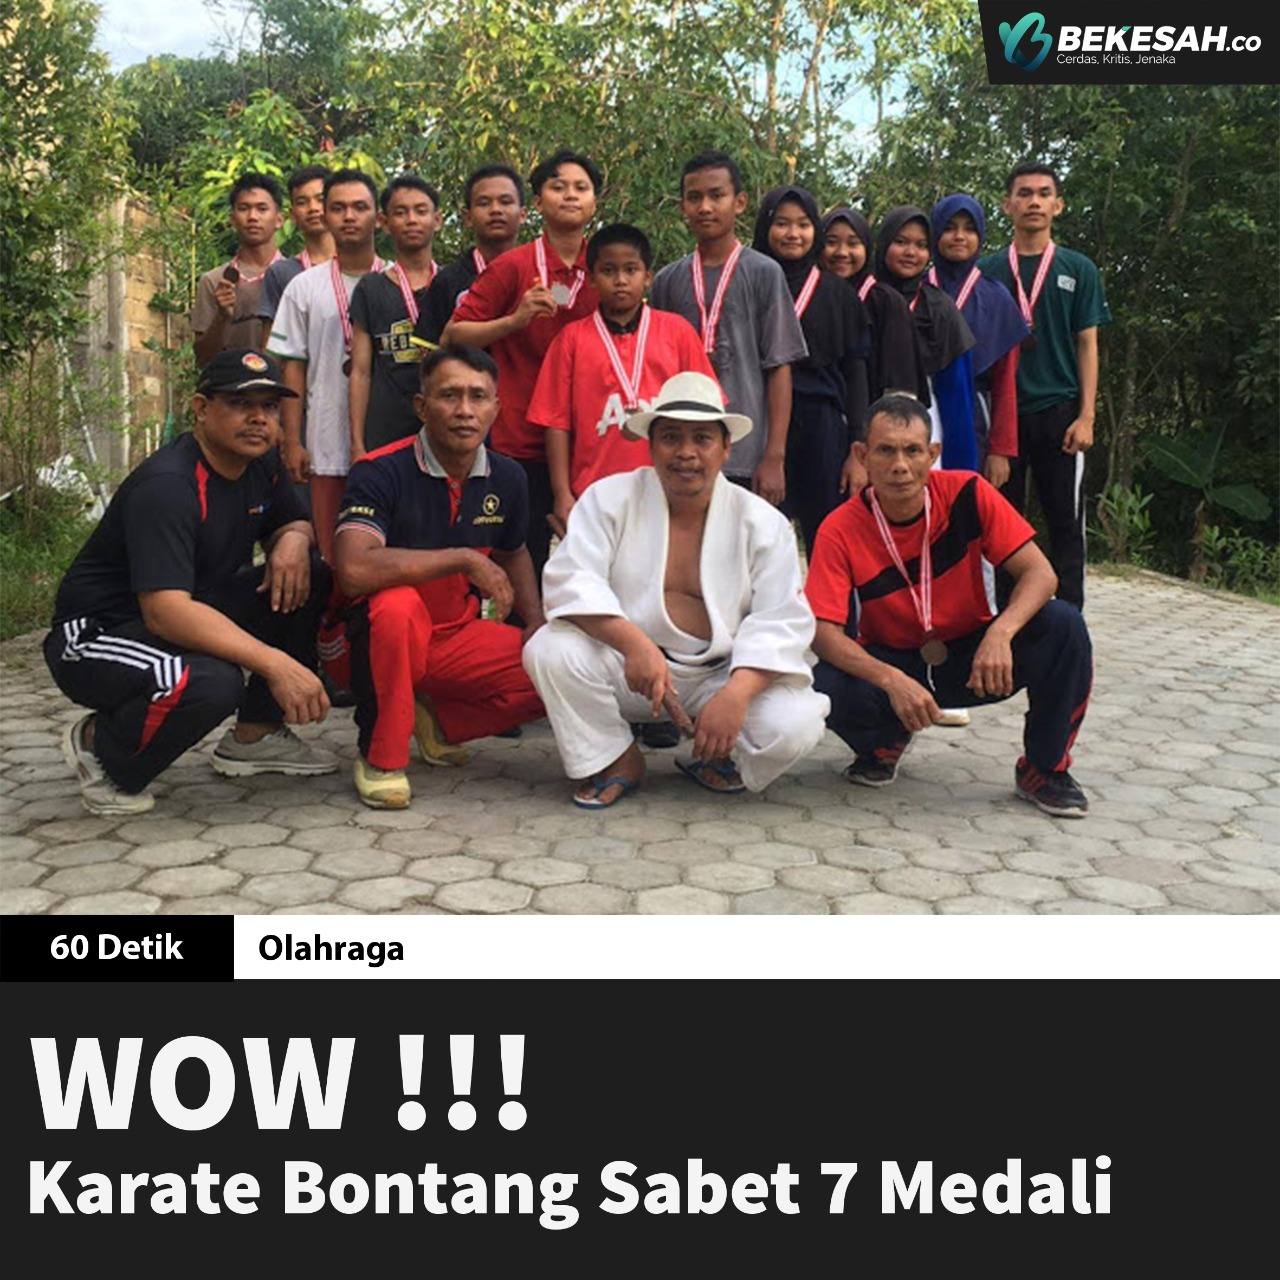 Wow!!! Karate Bontang Sabet 7 Medali